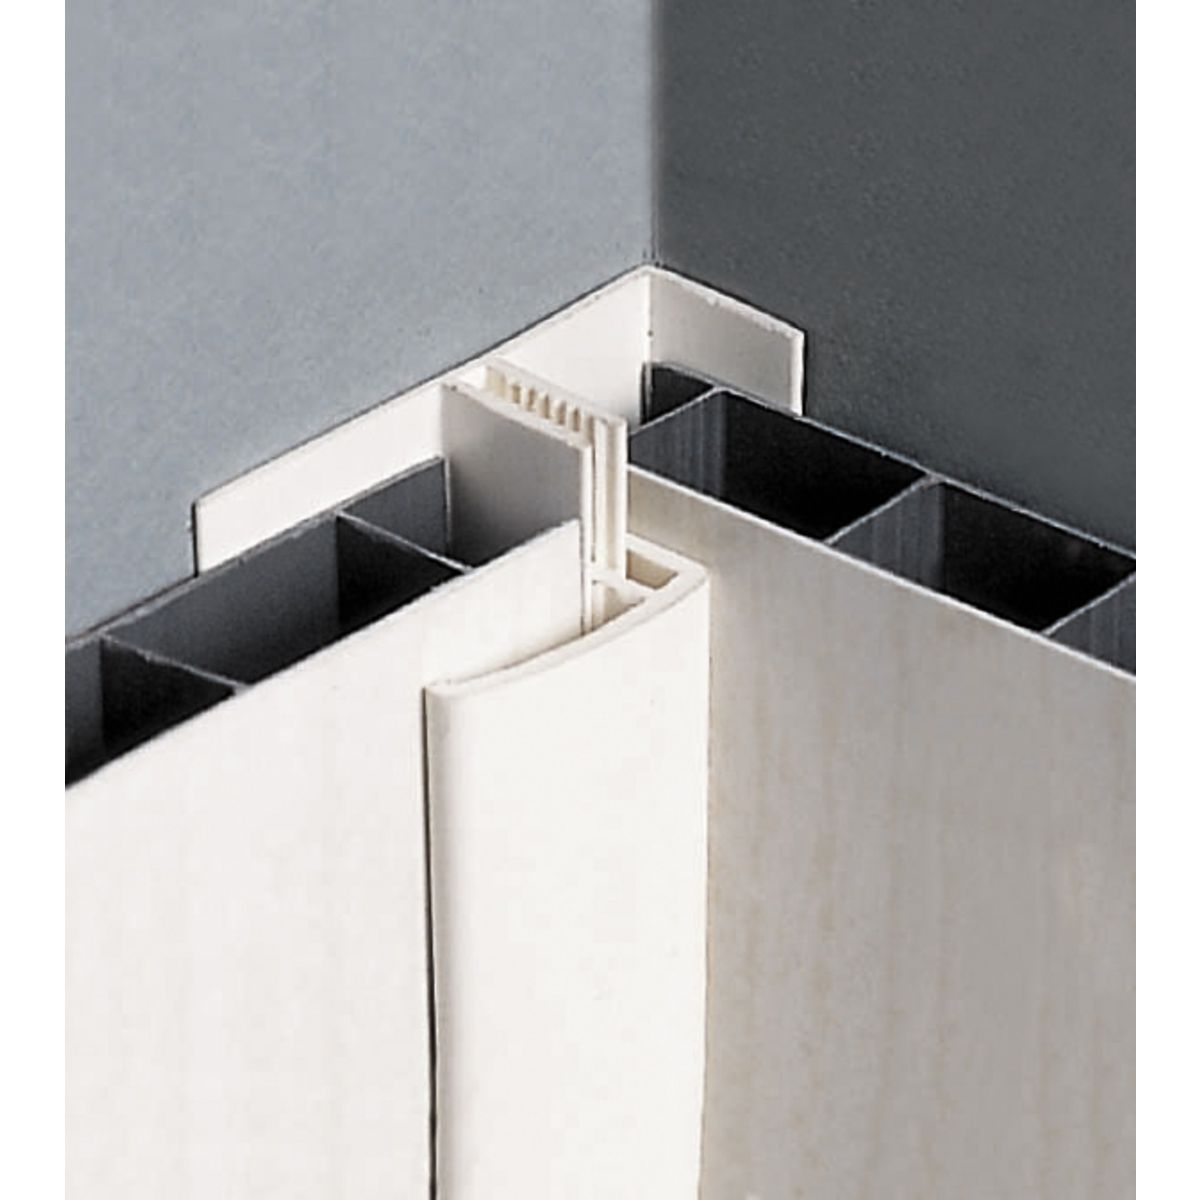 CENTRALE BRICO Profil de départ et finition PVC blanc, 1,7 cm x 3,3 cm x l. 2,6 m